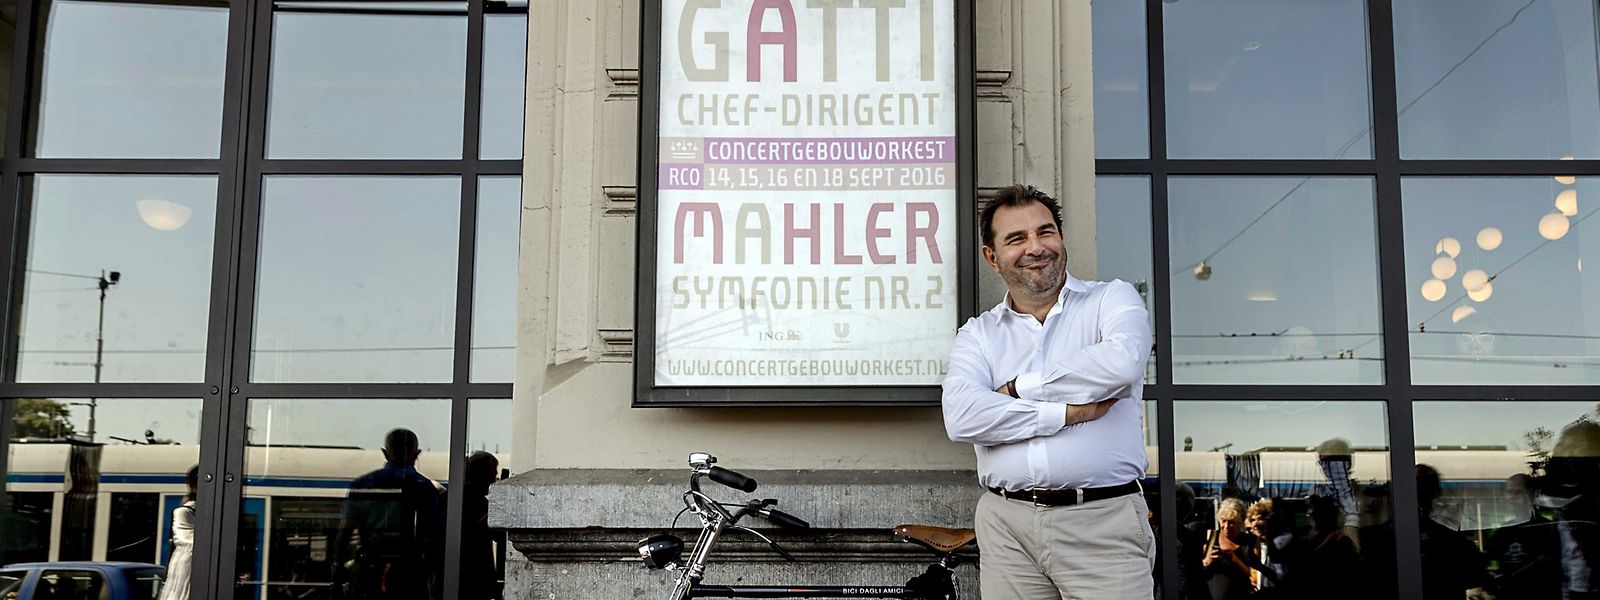 Zum Start gab's ein Fahrrad, zwei Jahre später folgte der Rausschmiss: Mehrere Musikerinnen hatten über „unangemessenes“ Verhalten von Daniele Gatti geklagt.